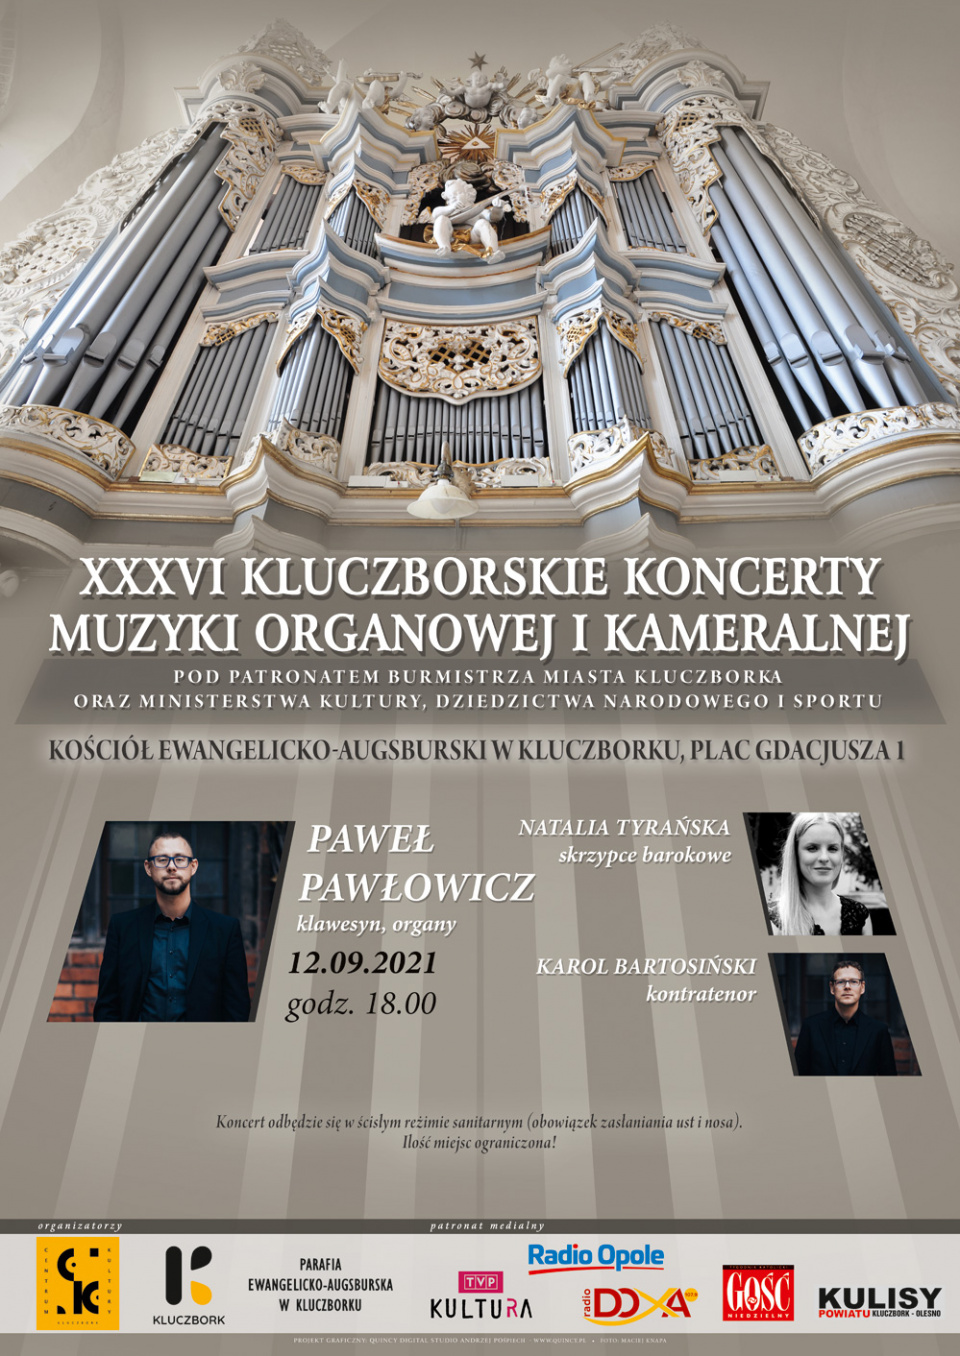 Plakat promujący koncert Pawła Pawłowicza (12.09.2021)